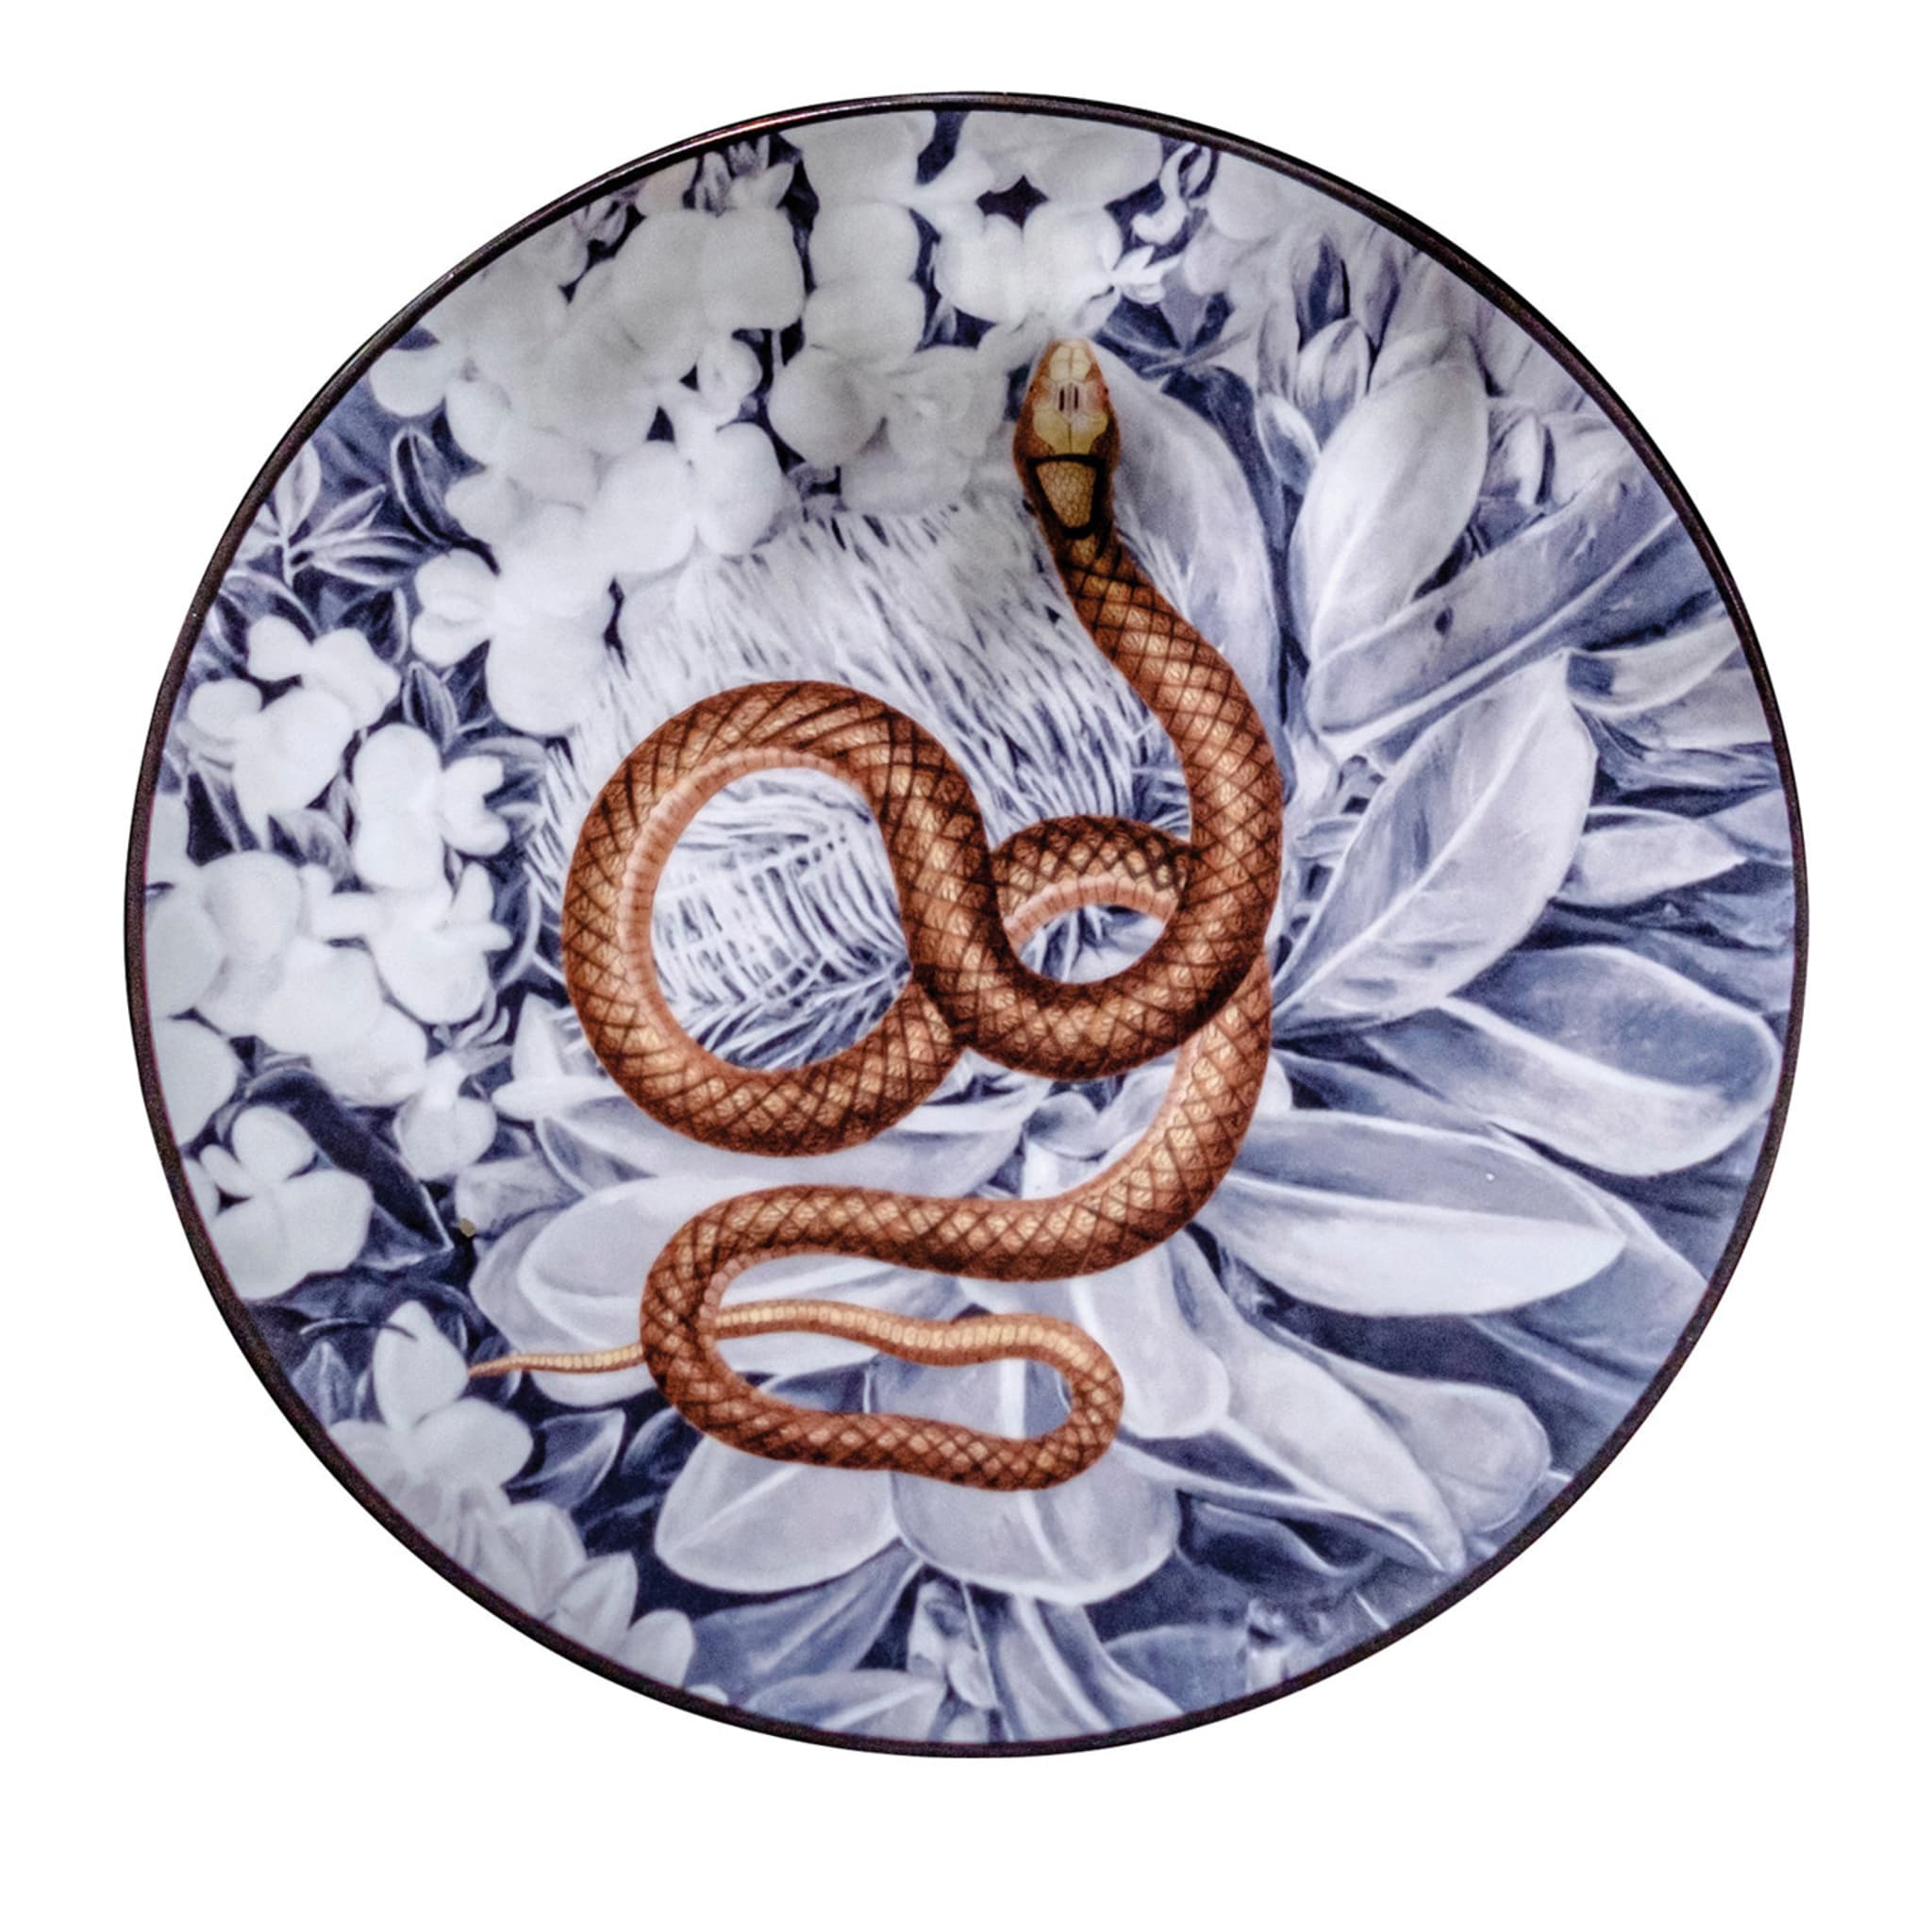 2er-Set Serpent Menagerie Ottomane Dessertteller aus Porzellan - Hauptansicht